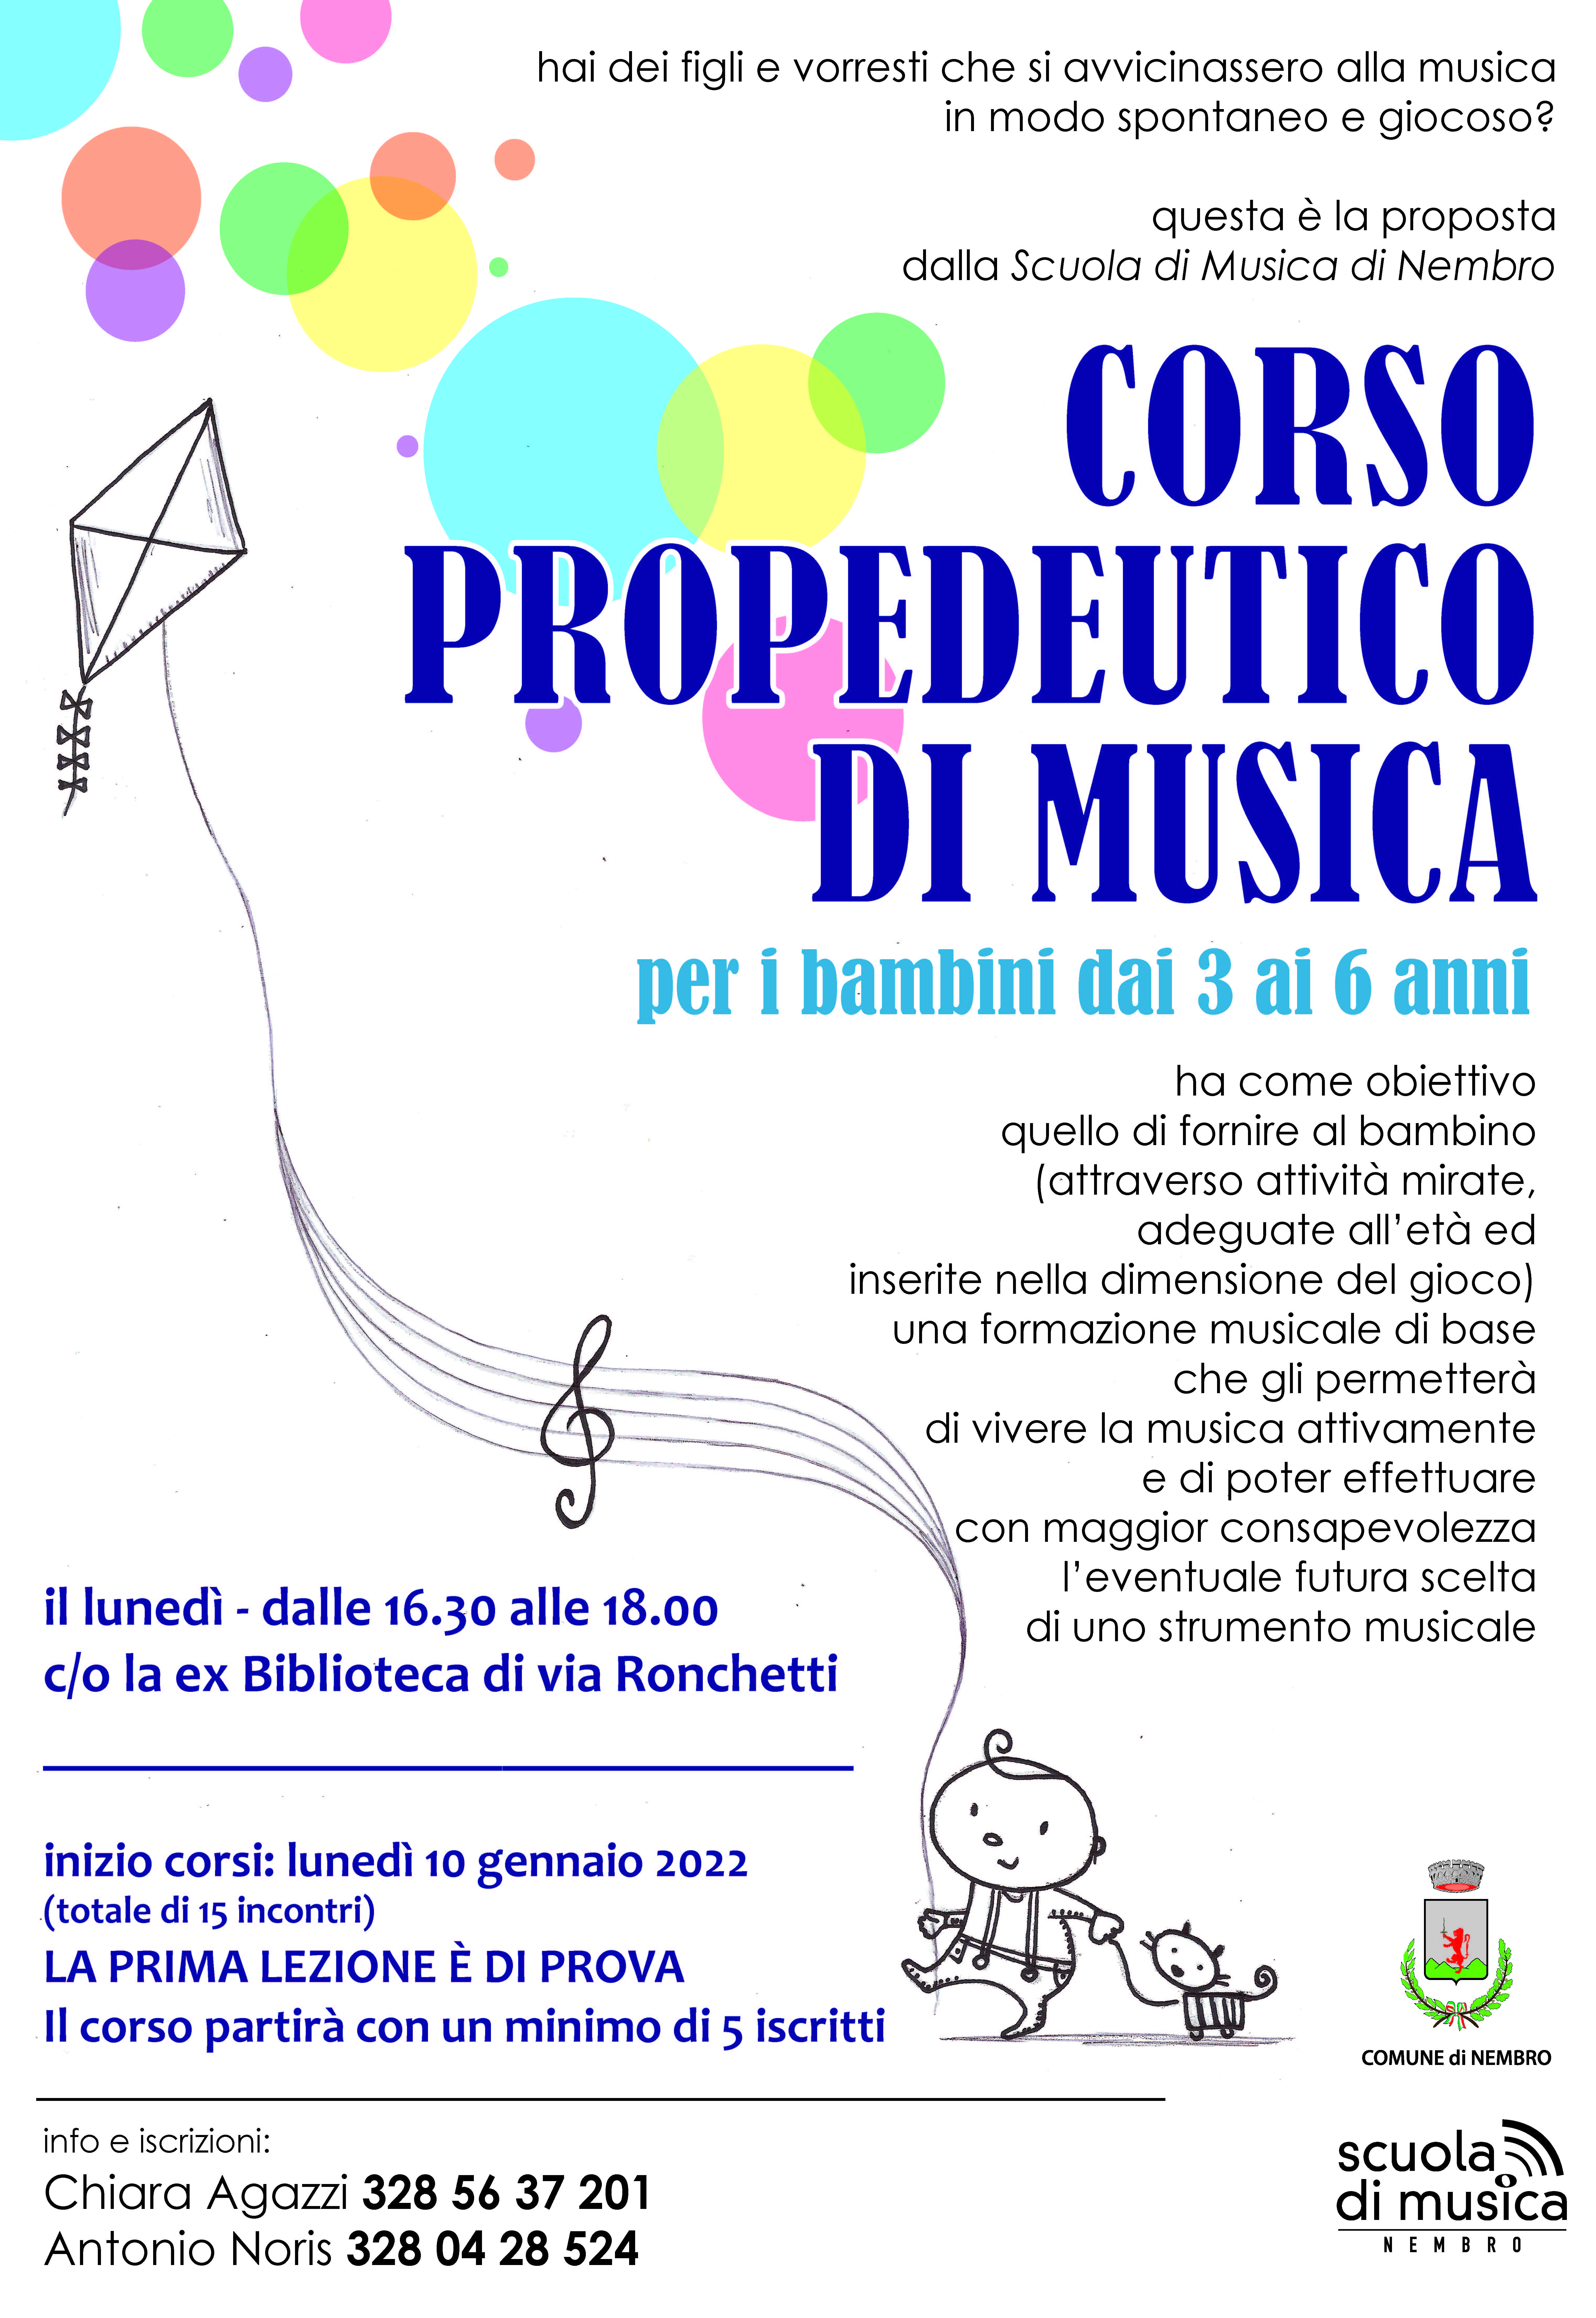 Immagine CORSO PROPEDEUTICO DI MUSICA per i bambini dai 3 ai 6 anni